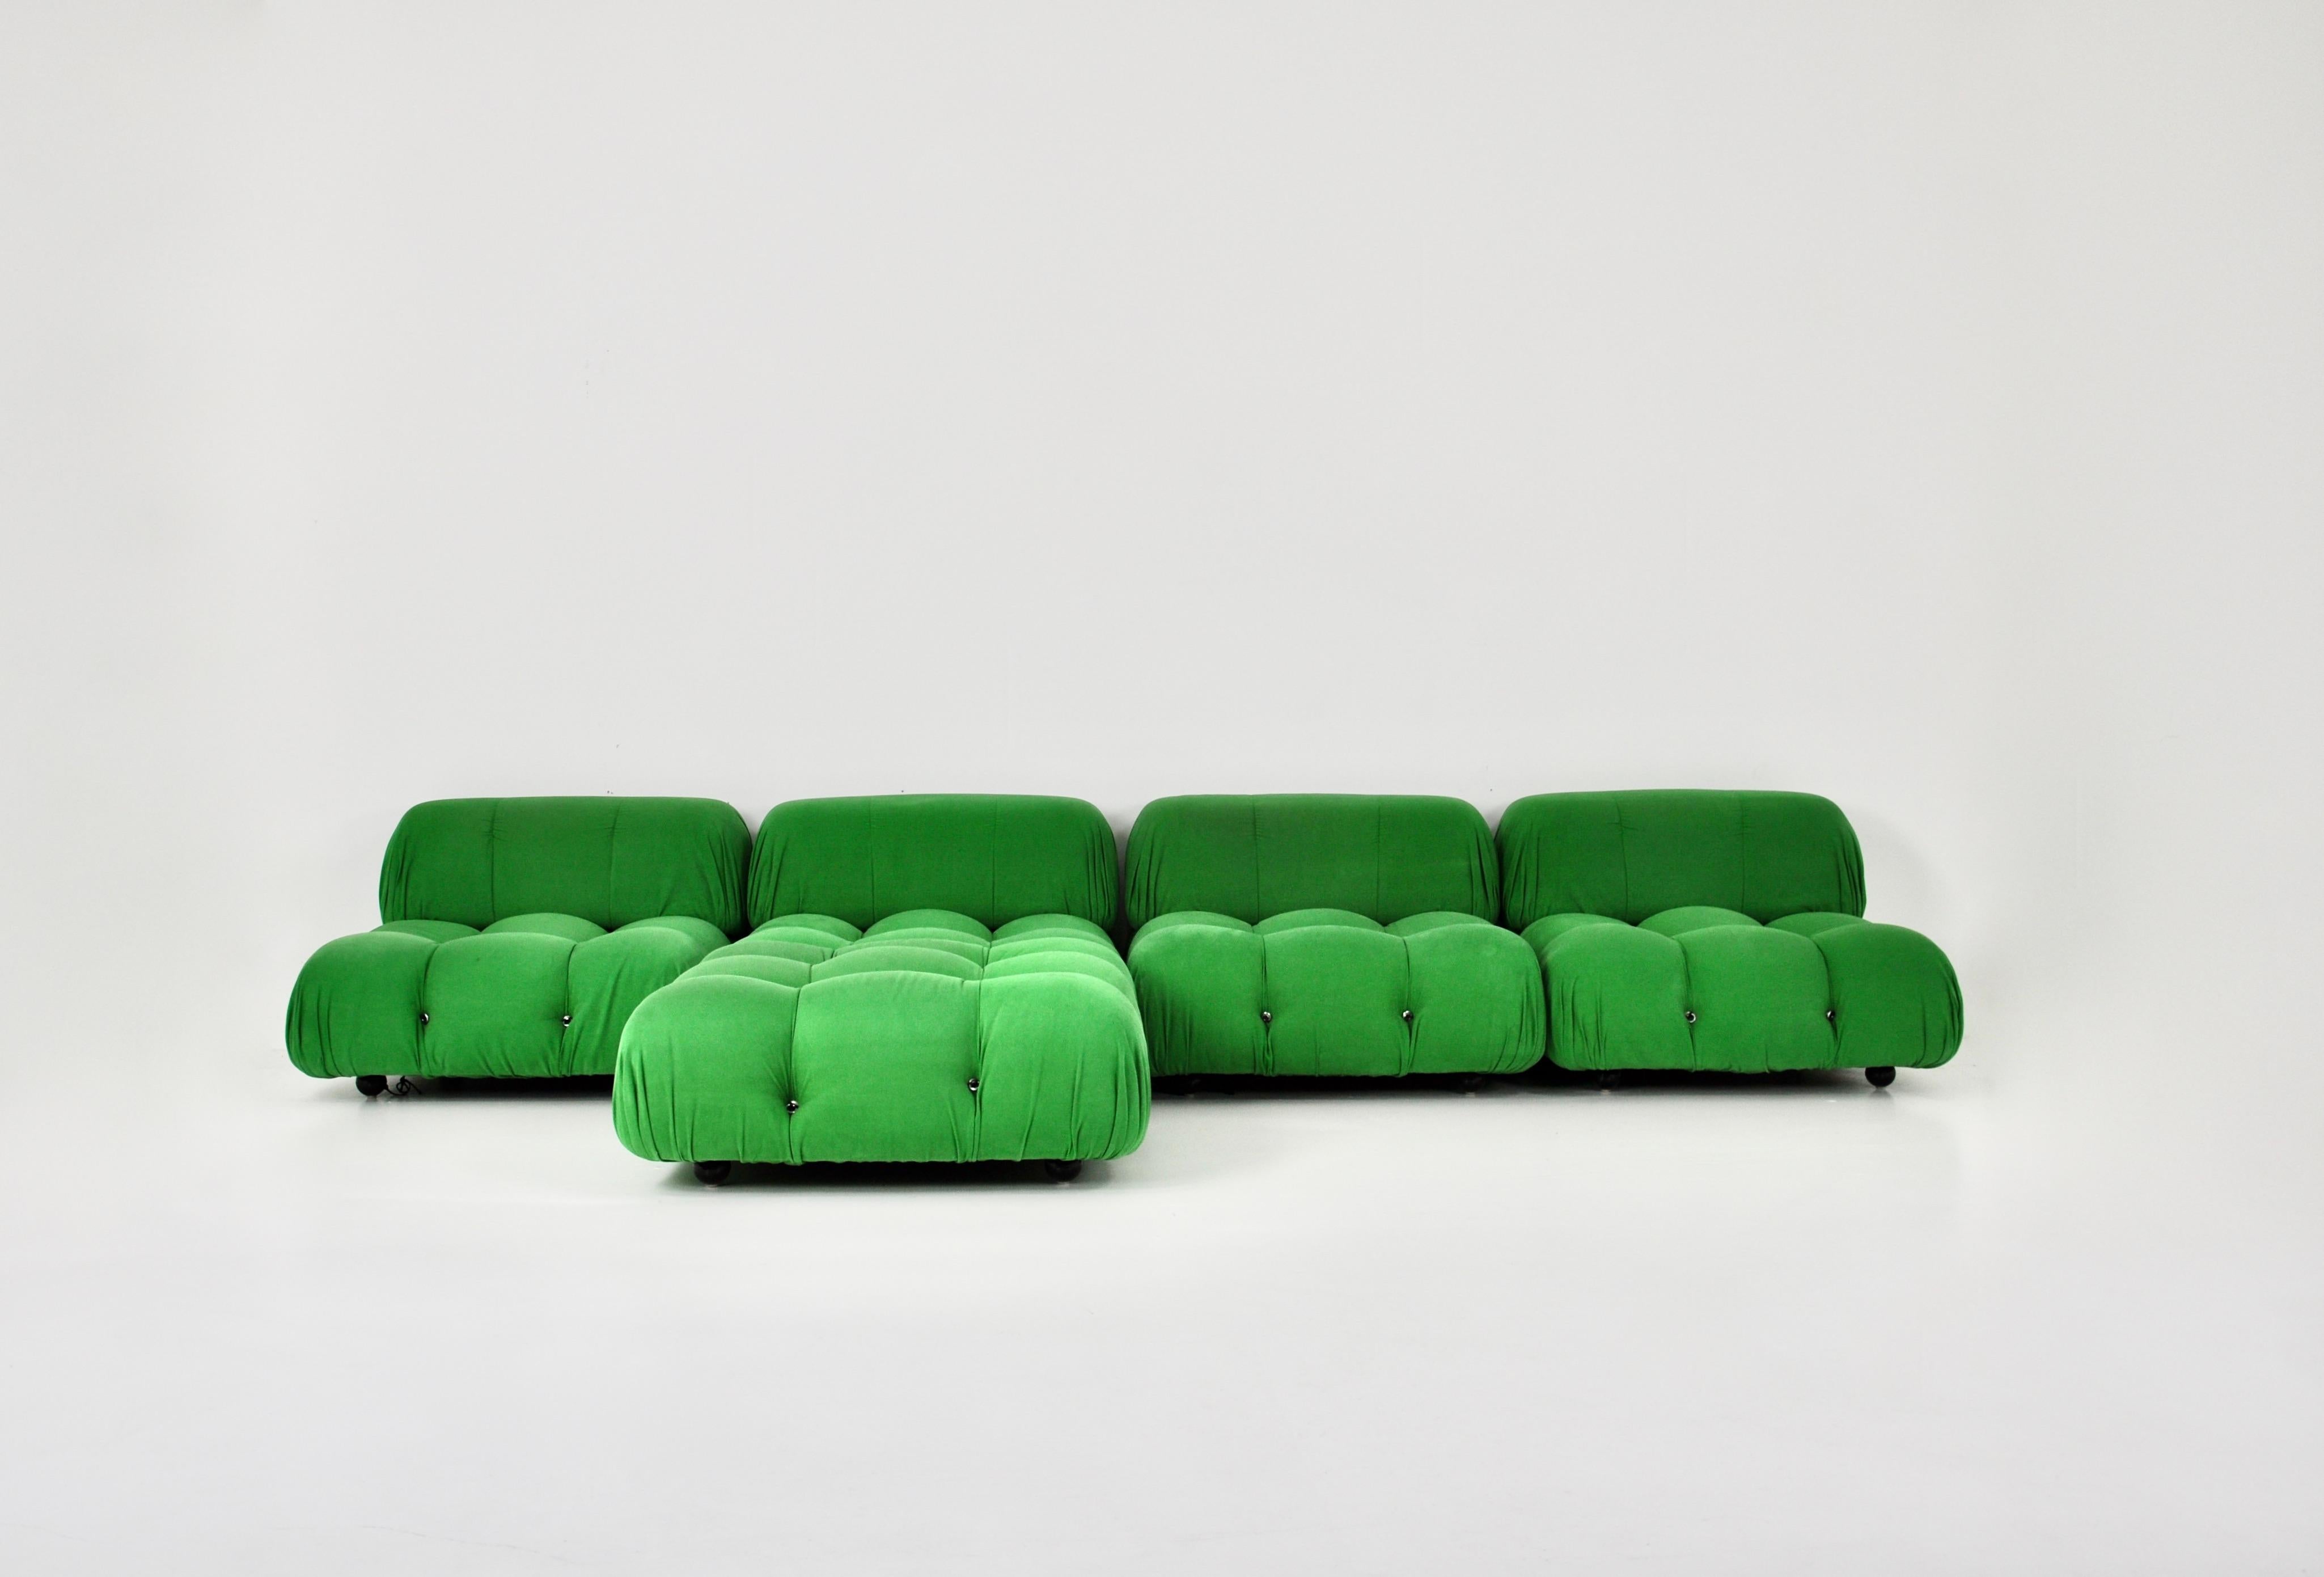 Sofa in grünem Stoff. Es gibt 4 große Stücke und eine Ottomane. Sitzhöhe: 35 cm. Abmessungen eines Stücks: H: 65 cm B: 93 cm T: 93 cm
Abmessungen des Hockers: H: 35 cm B: 93 cm T: 93 cm.
Modular wie Sie wollen.
Gestempelt B&B Italia.
Abnutzung durch